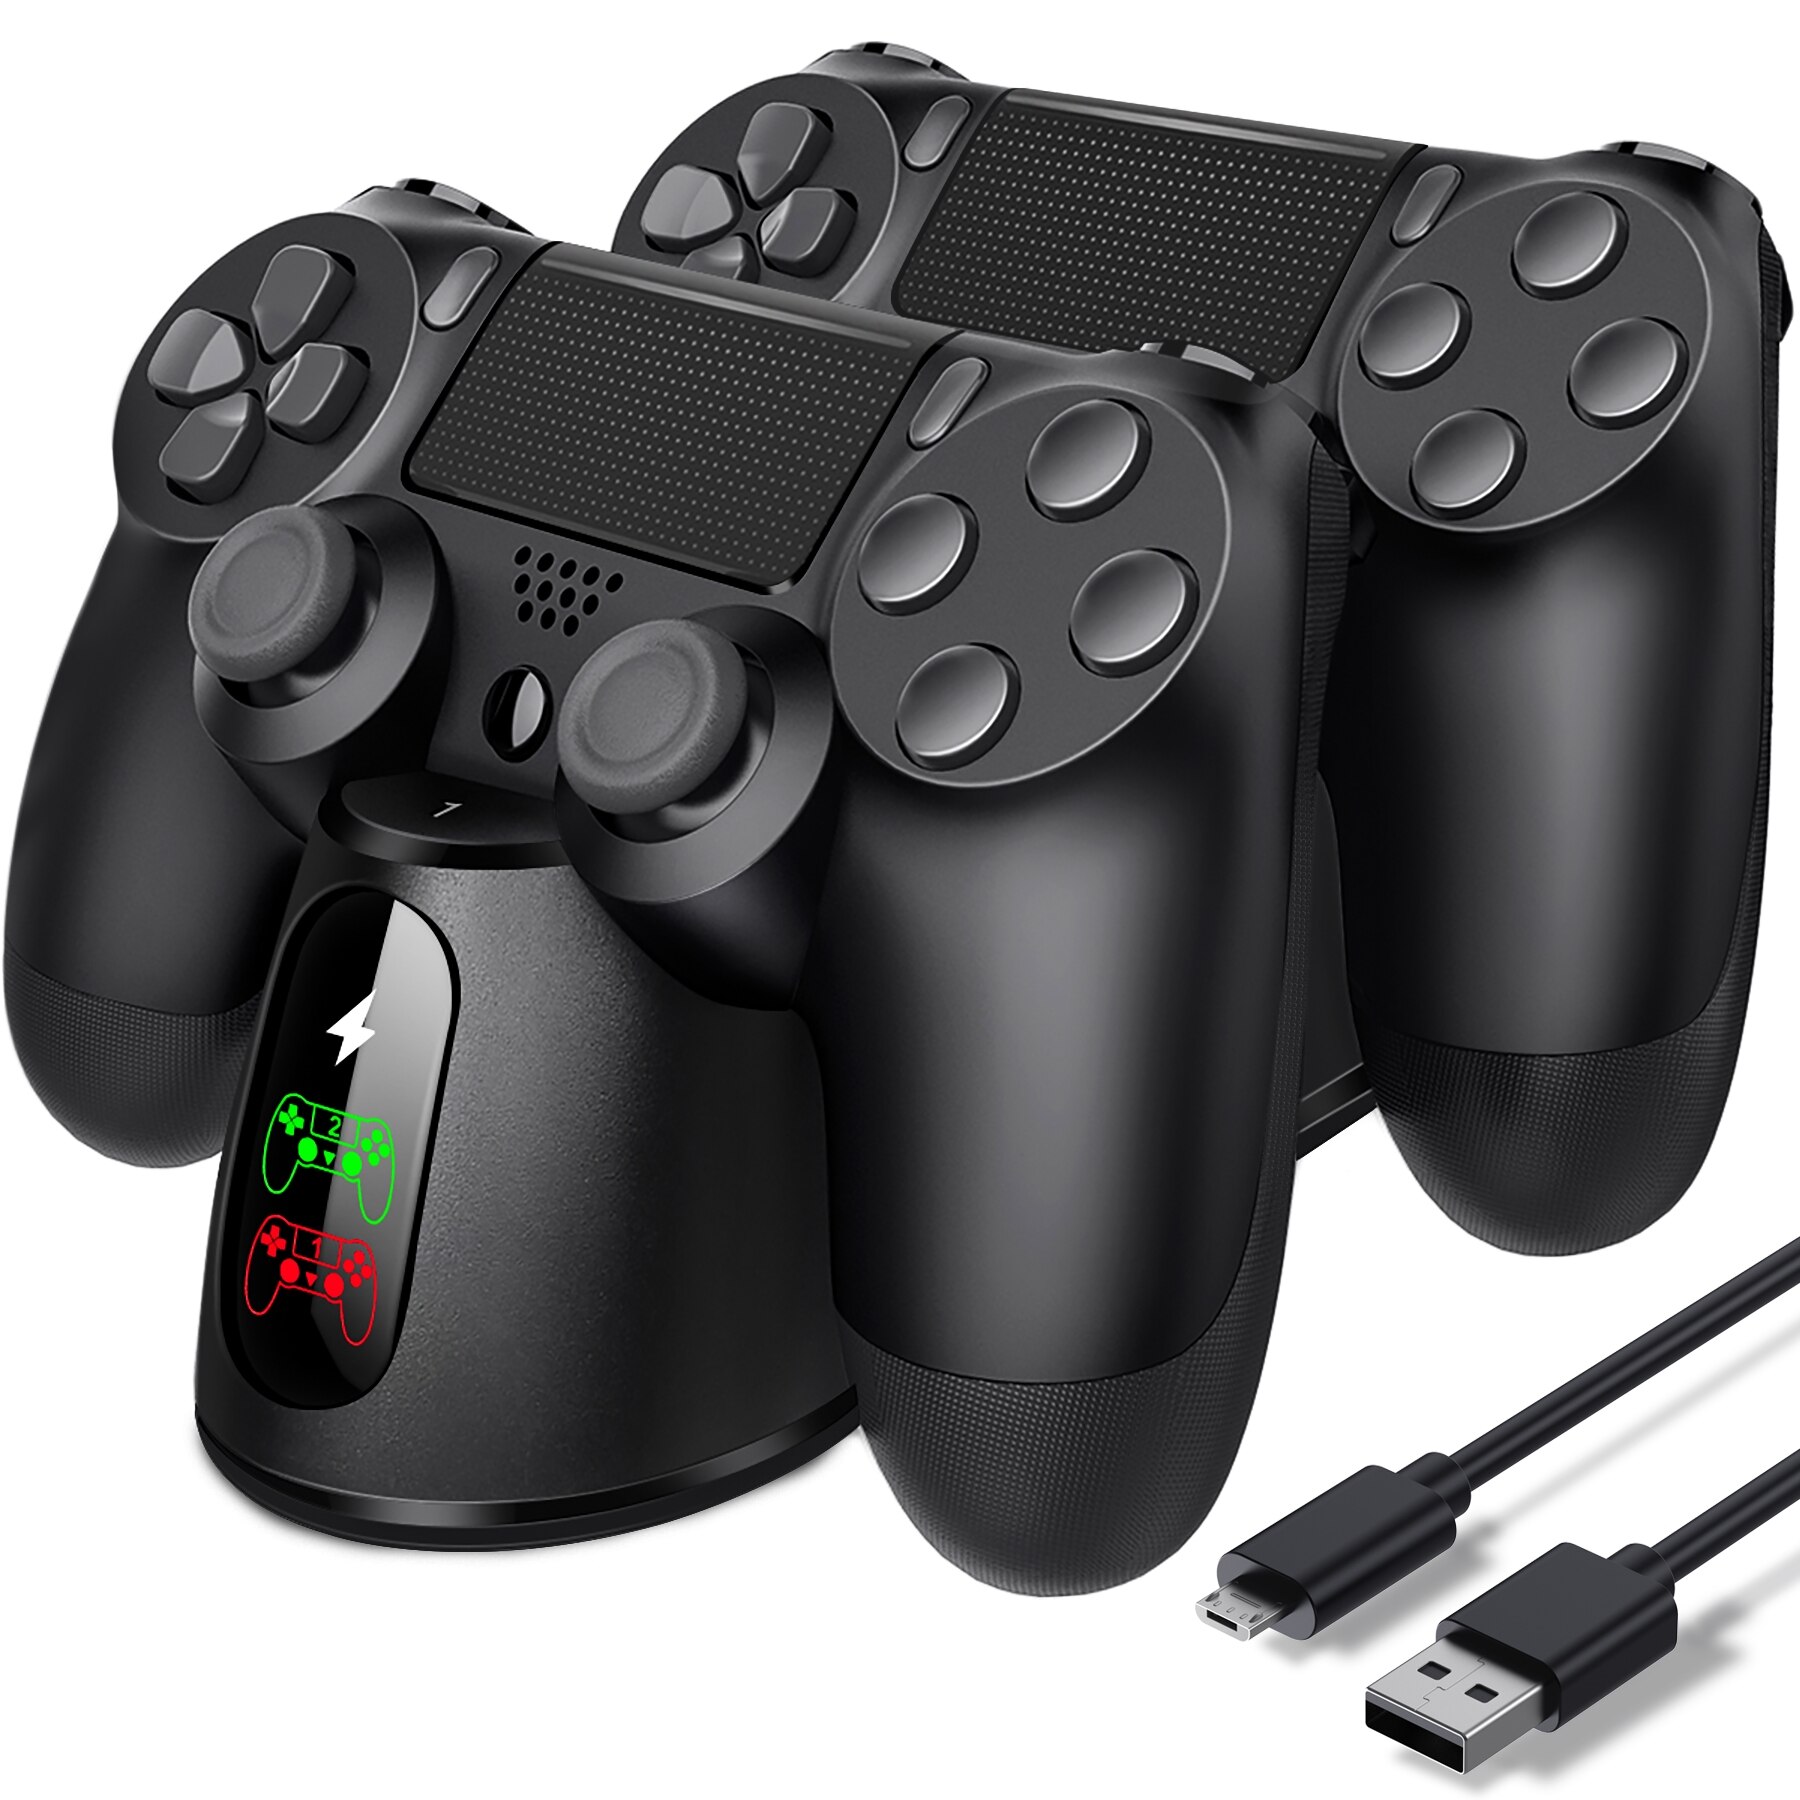 وحدة تحكم من BEBONCOOL شاحن Dualsense حوض ل PS4 محطة شحن ل DualShock 4/بلاي ستيشن 4/PS4/برو/PS4 سليم المراقب المالي